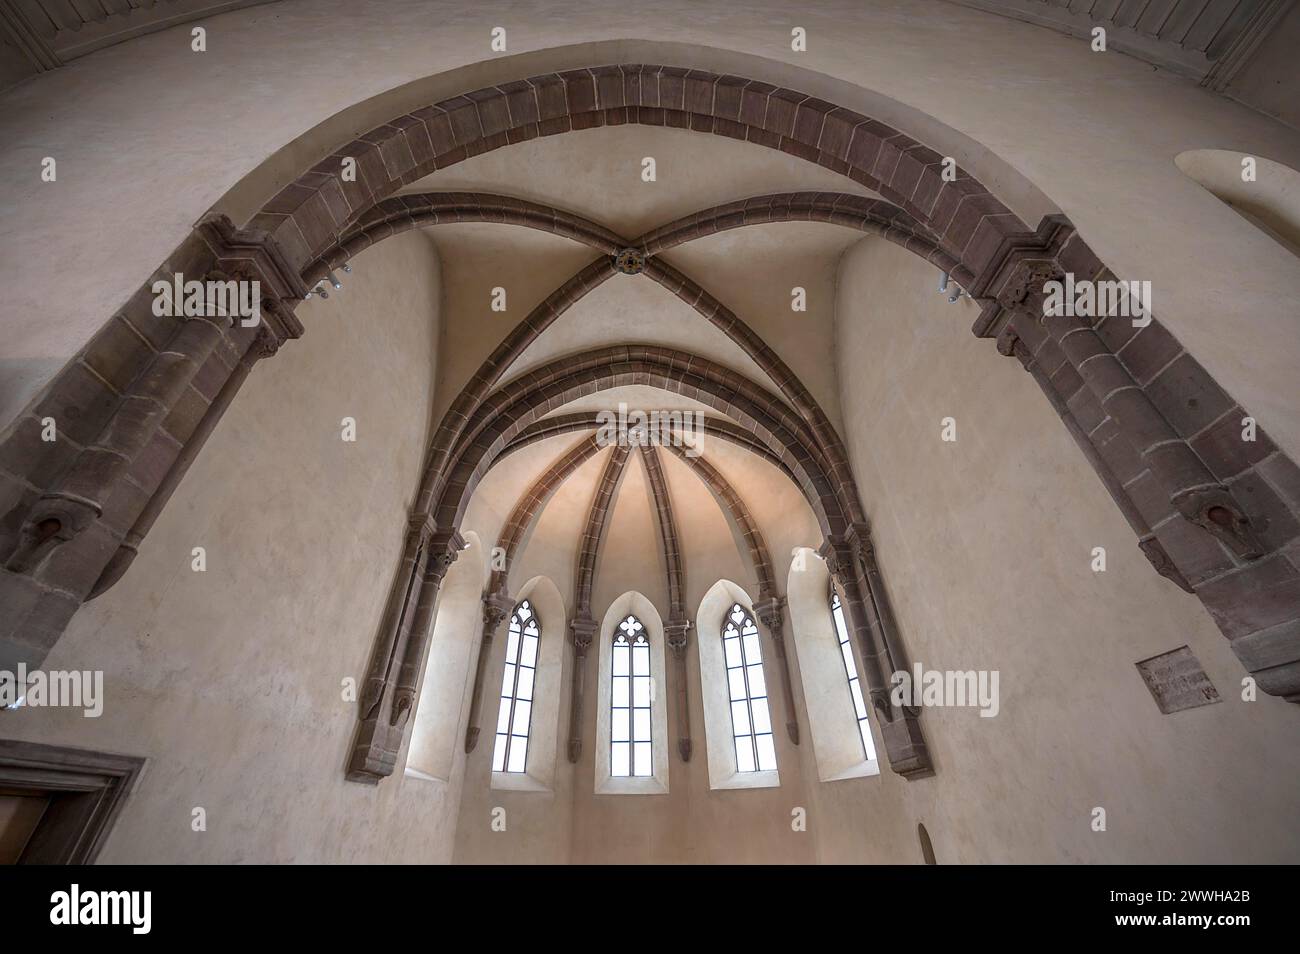 Voûte côtelée gothique primitive dans l'église St Clare, Koenigstrasse 66, Nuremberg, moyenne Franconie, Bavière, Allemagne Banque D'Images